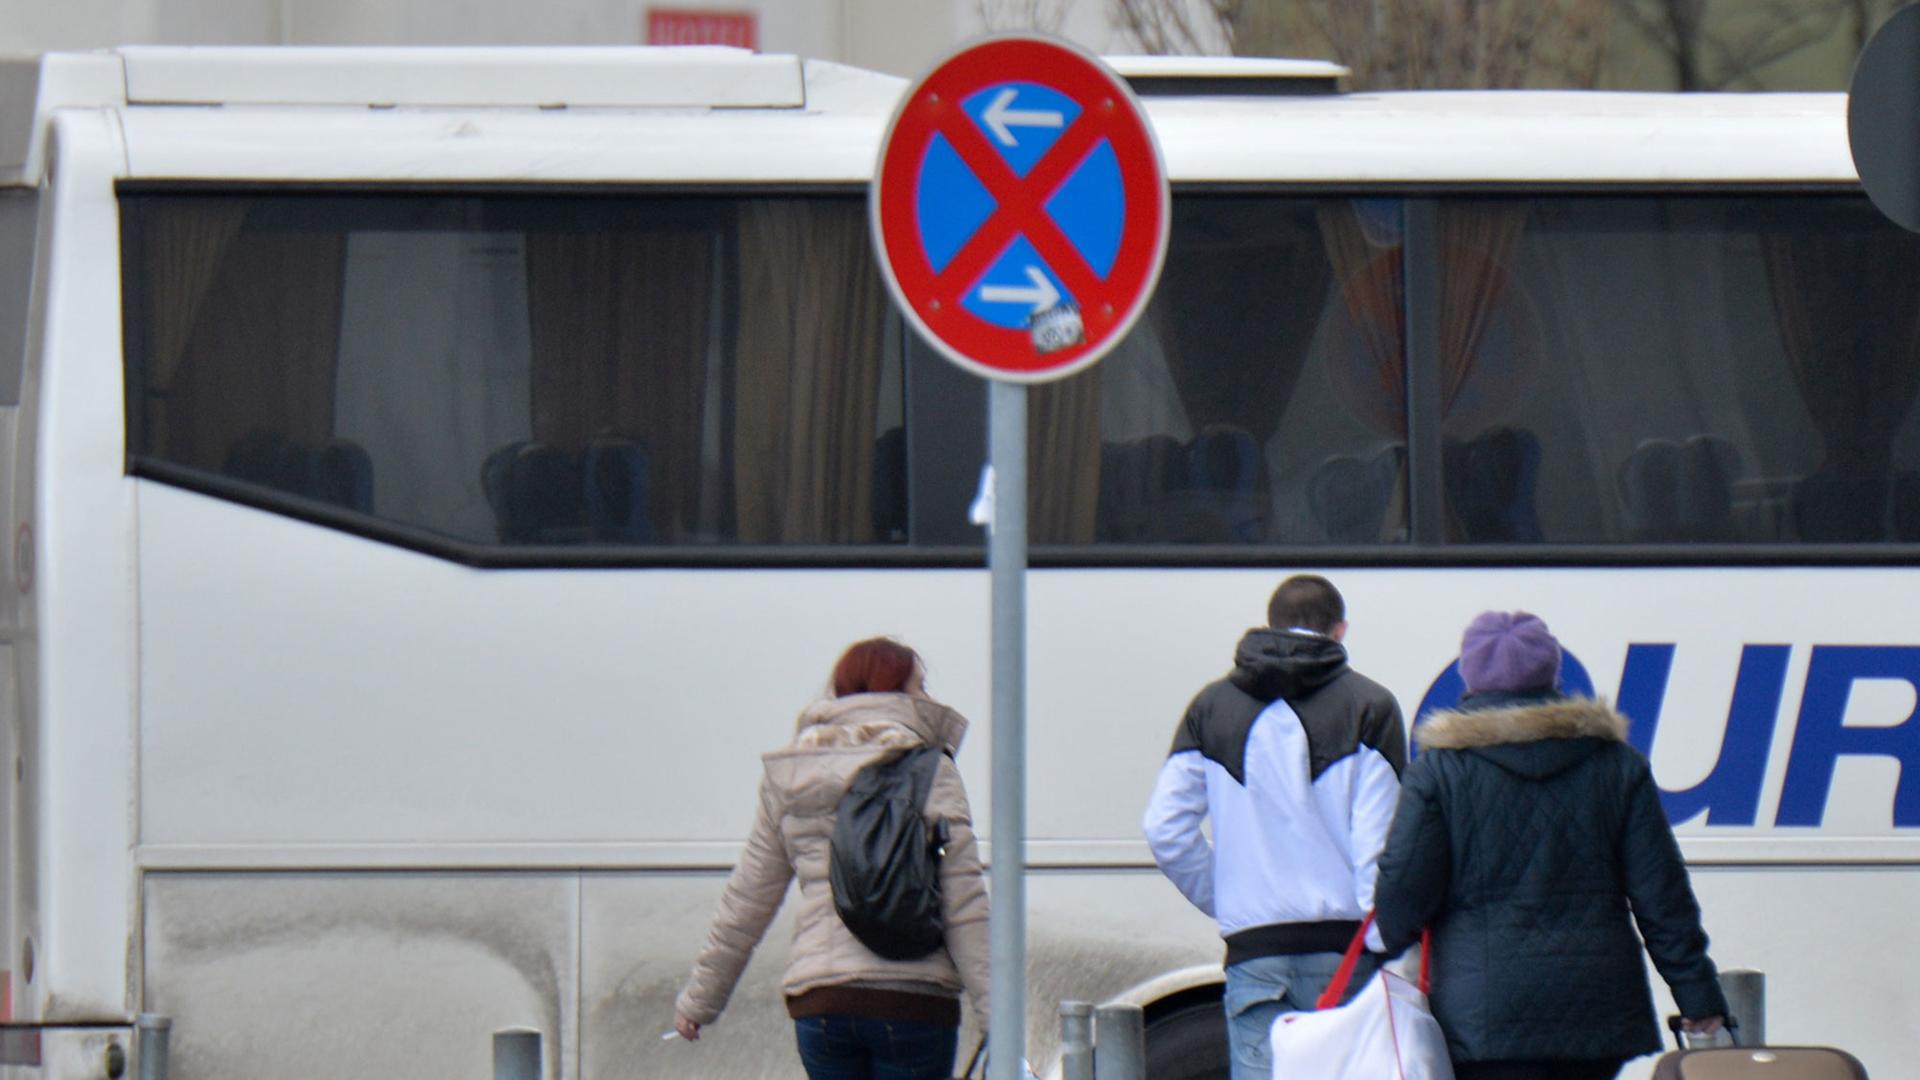 Fahrgäste eines aus Rumänien eingetroffenen Reisebusses gehen am 08.01.2014 in Berlin an einer Haltestelle des Zentralen Omnibusbahnhofes Berlin (ZOB) mit ihren Koffern zum Ausgang.